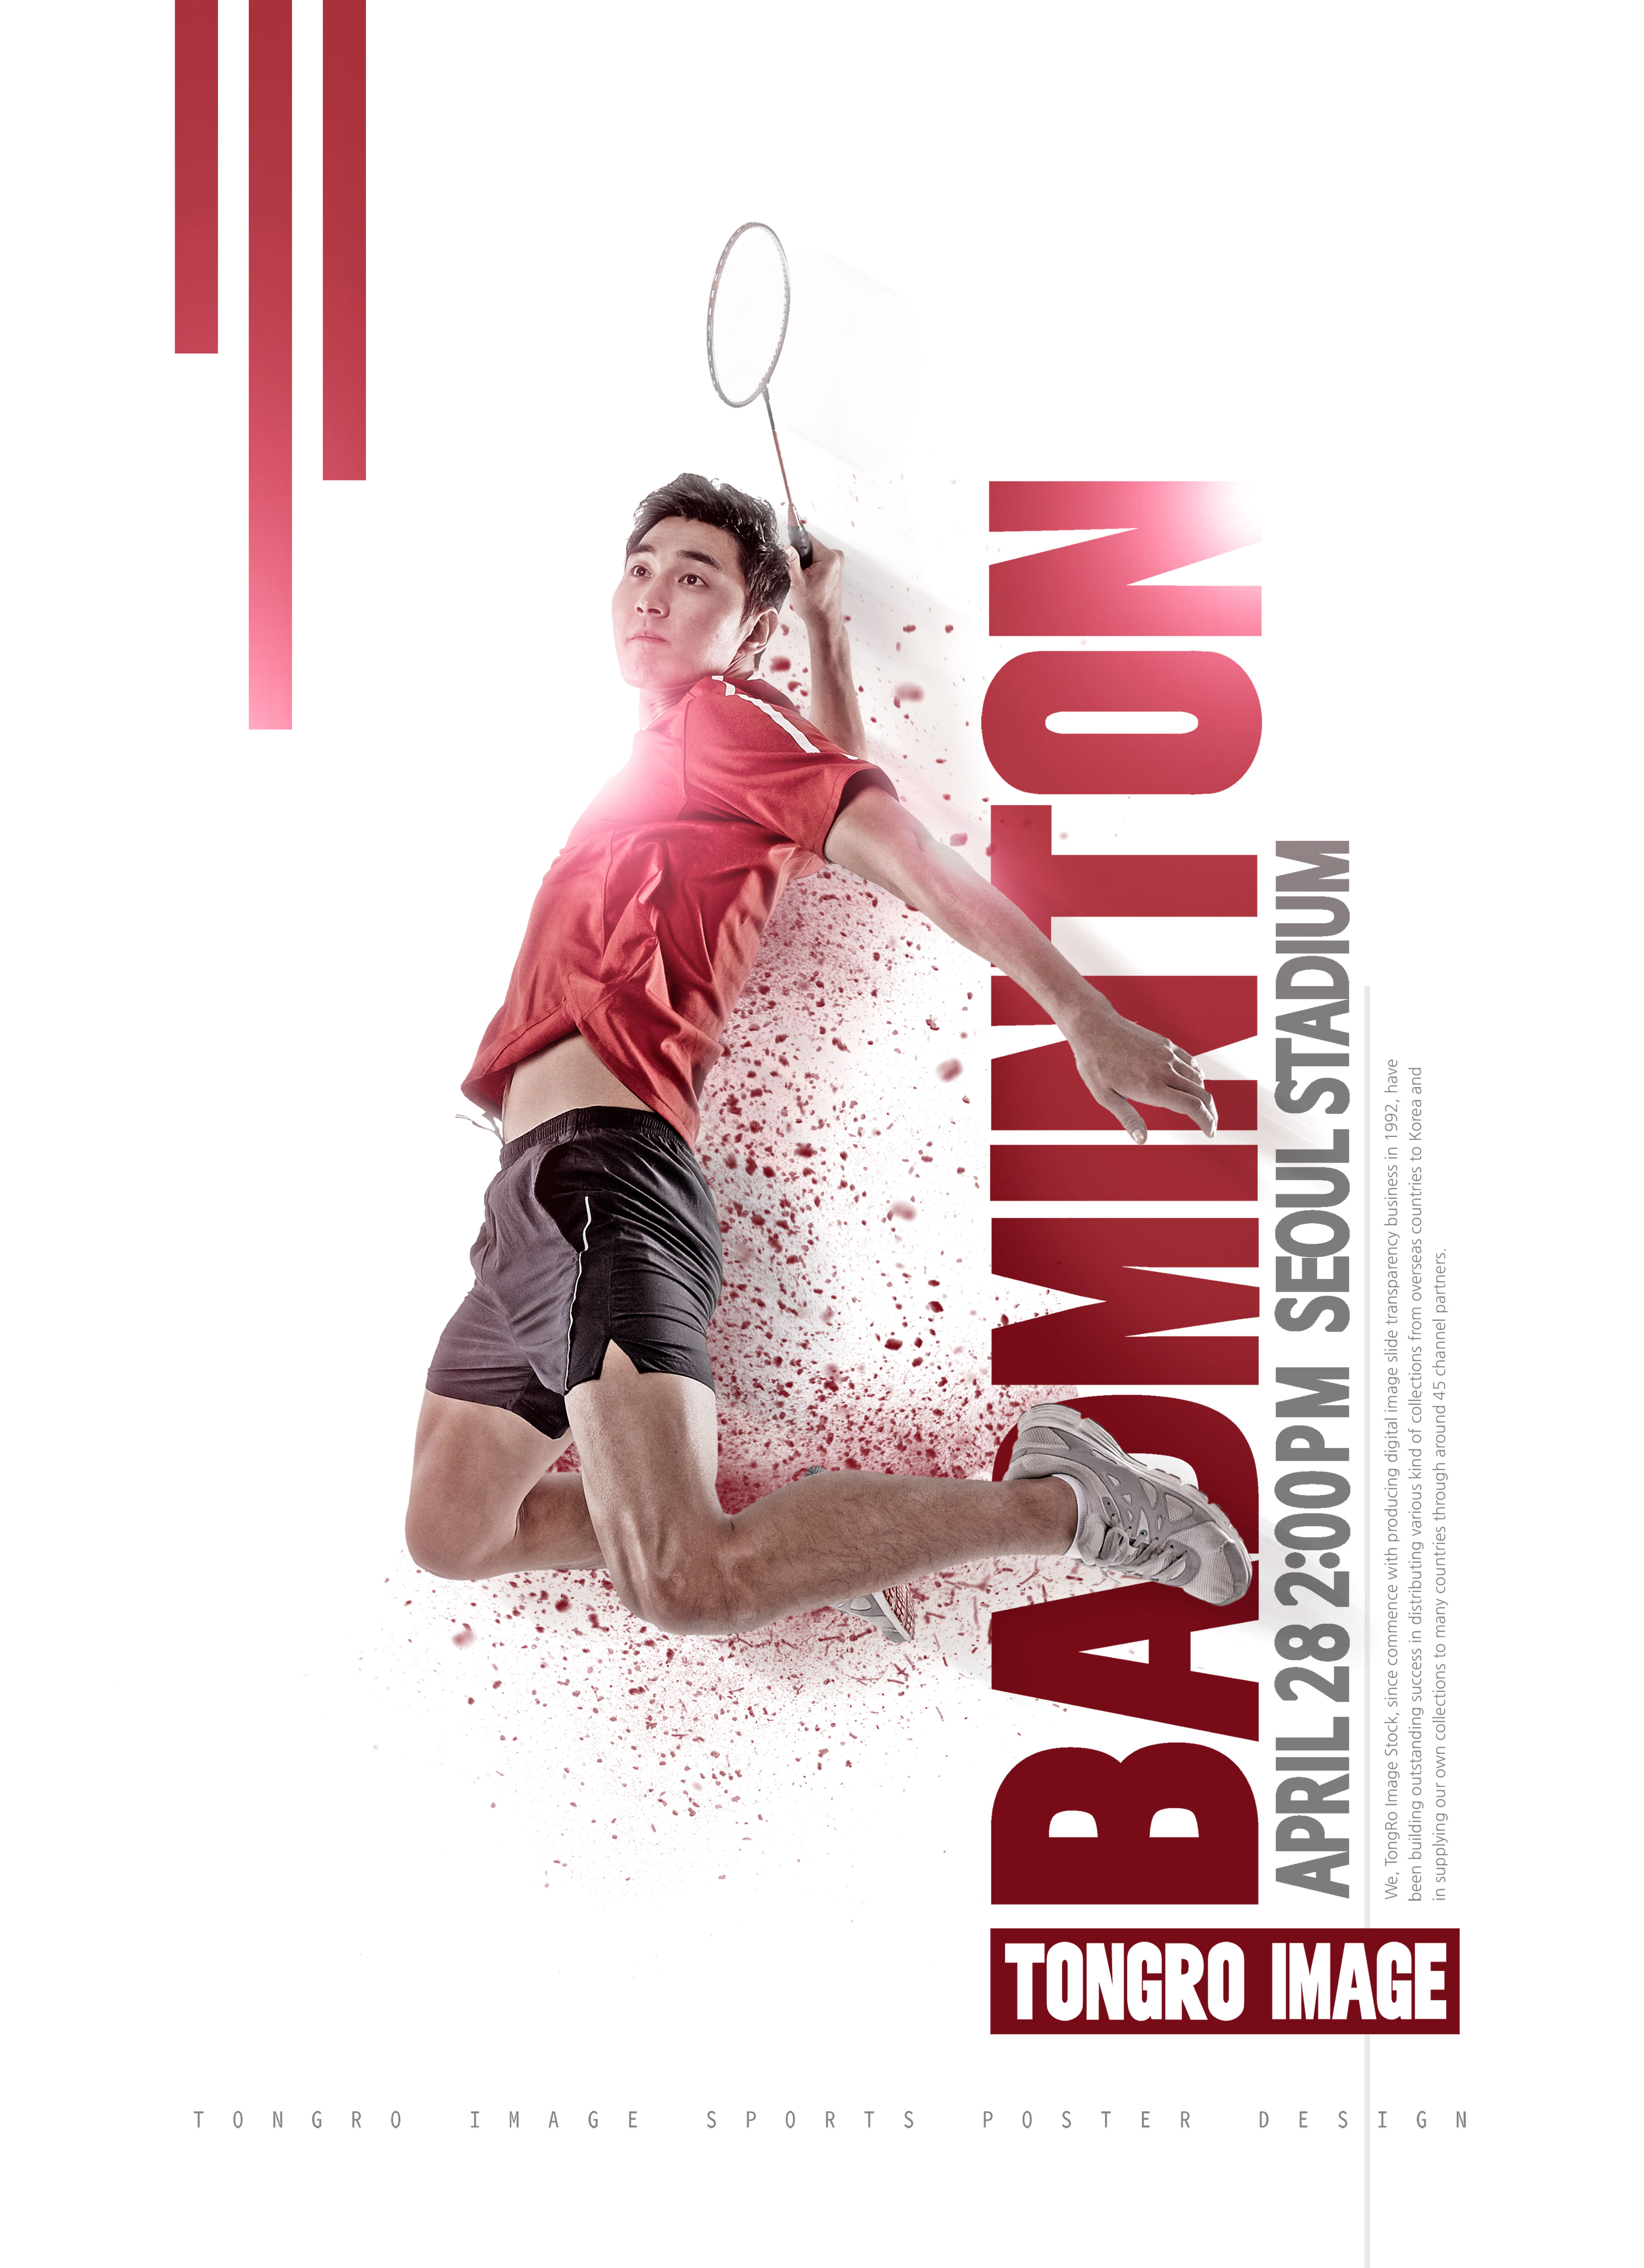 羽毛球体育比赛运动海报PSD素材第一素材精选模板插图